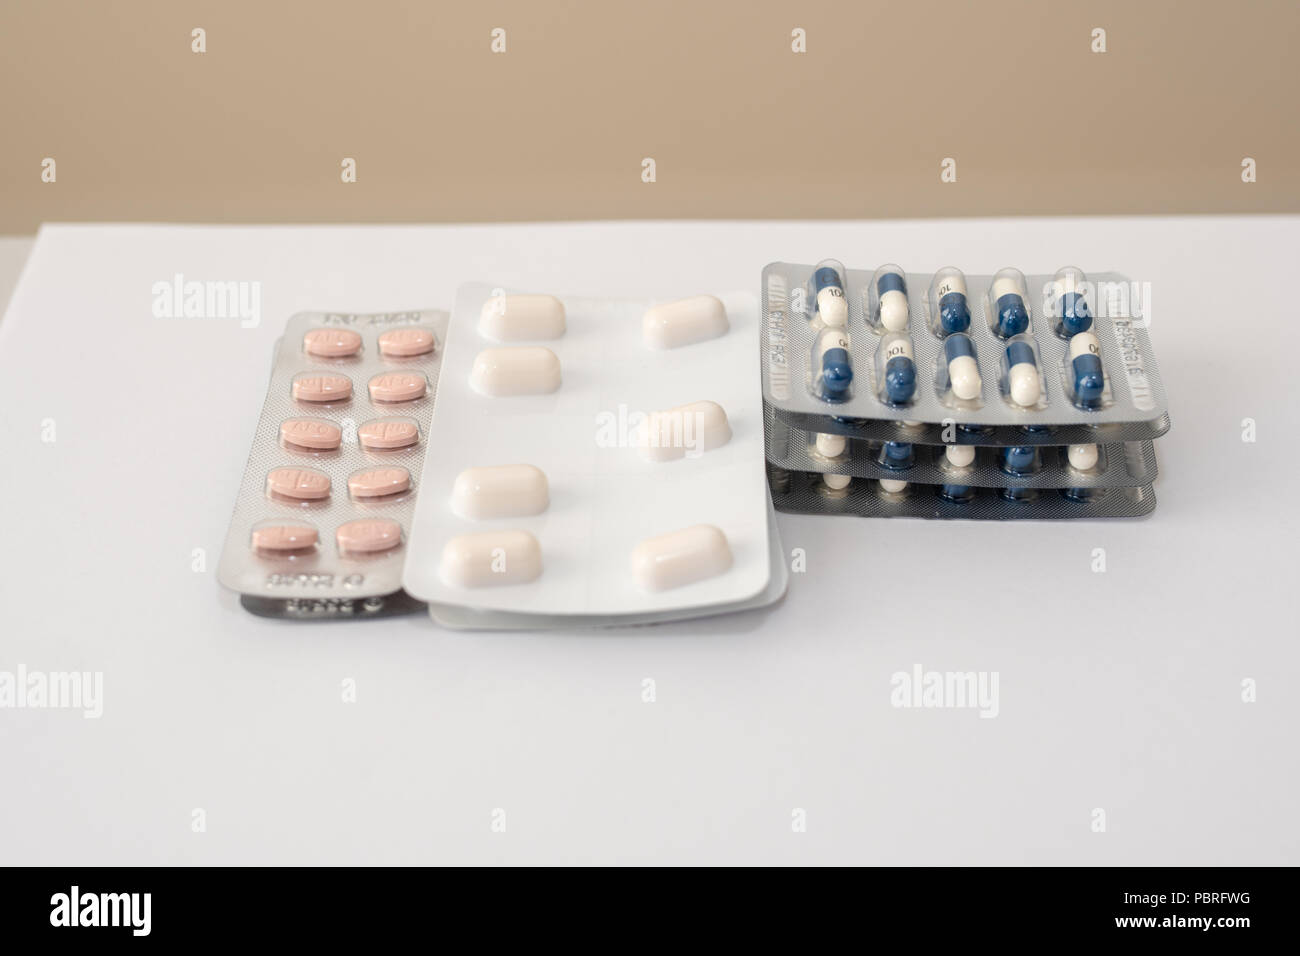 Several blister packs of prescription medication in blister packs Stock Photo